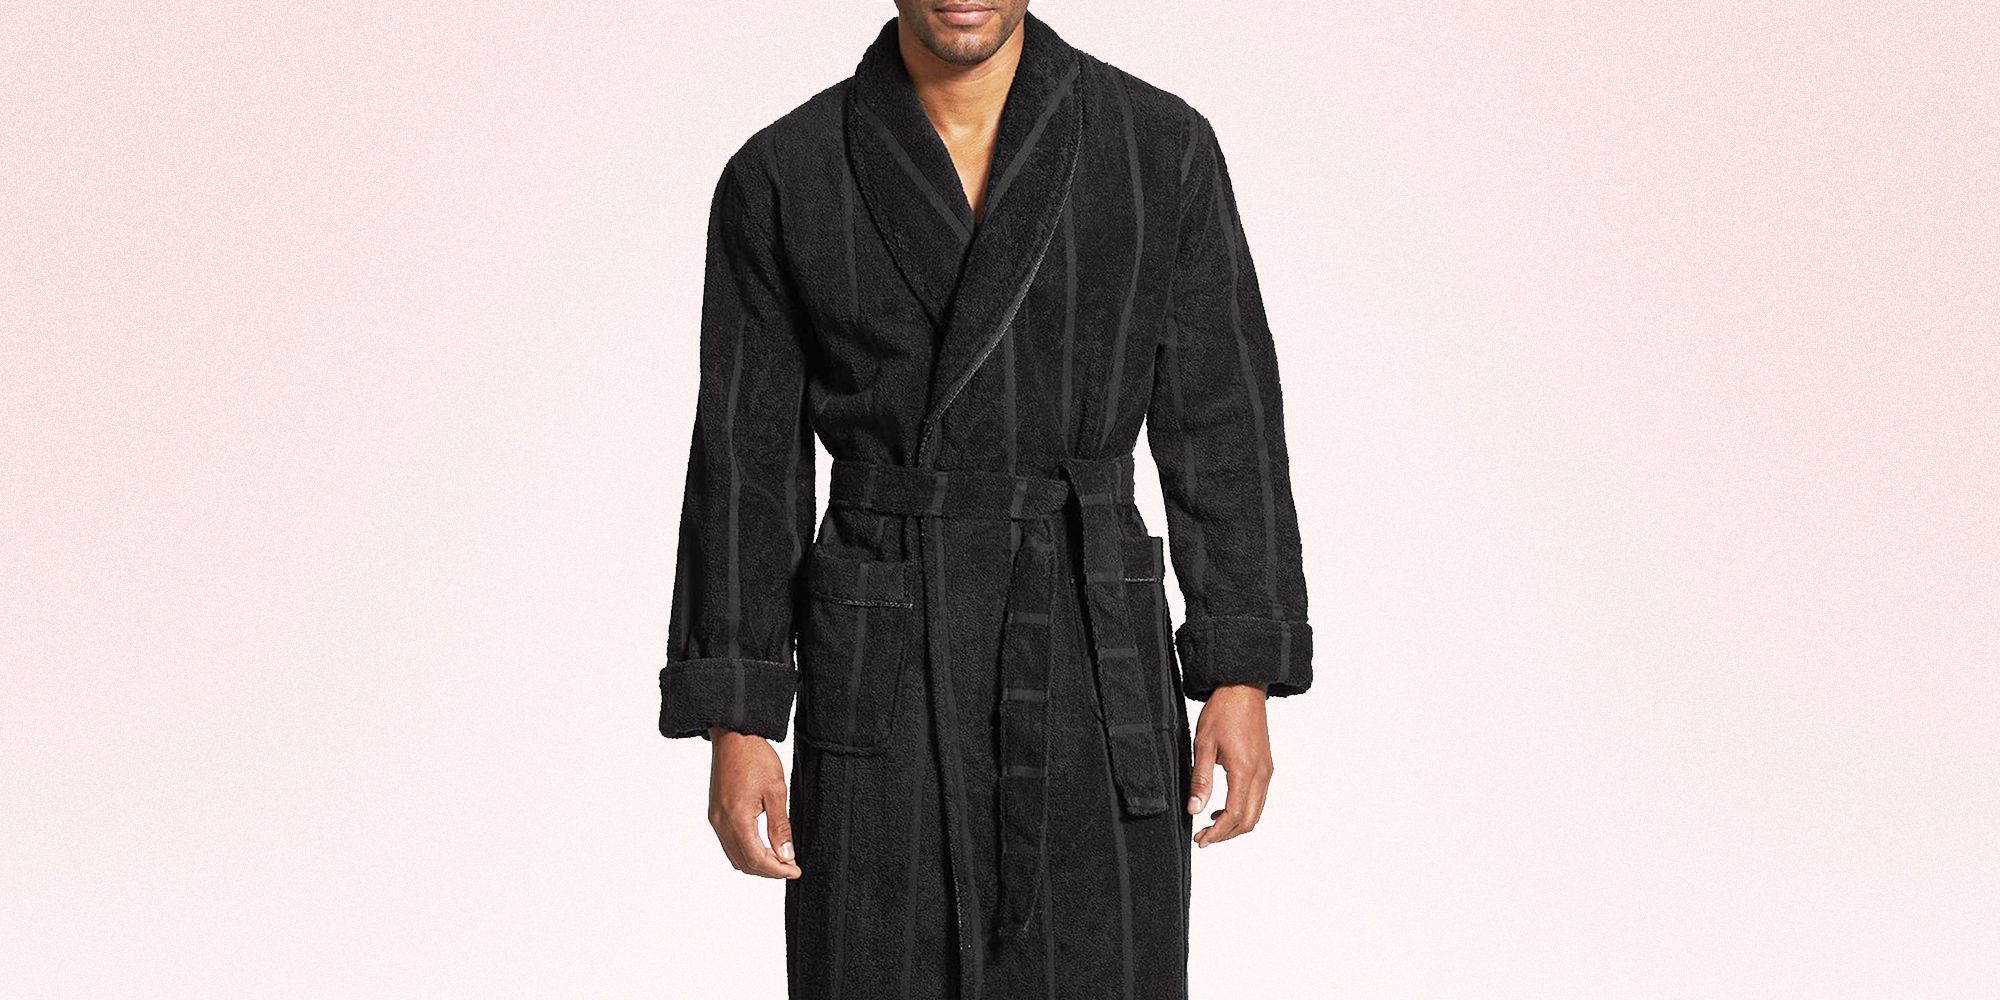 New Men LUXURY Bath Robes Housecoat Dressing Gown Bathrobe UK Size M L Xl XXL 